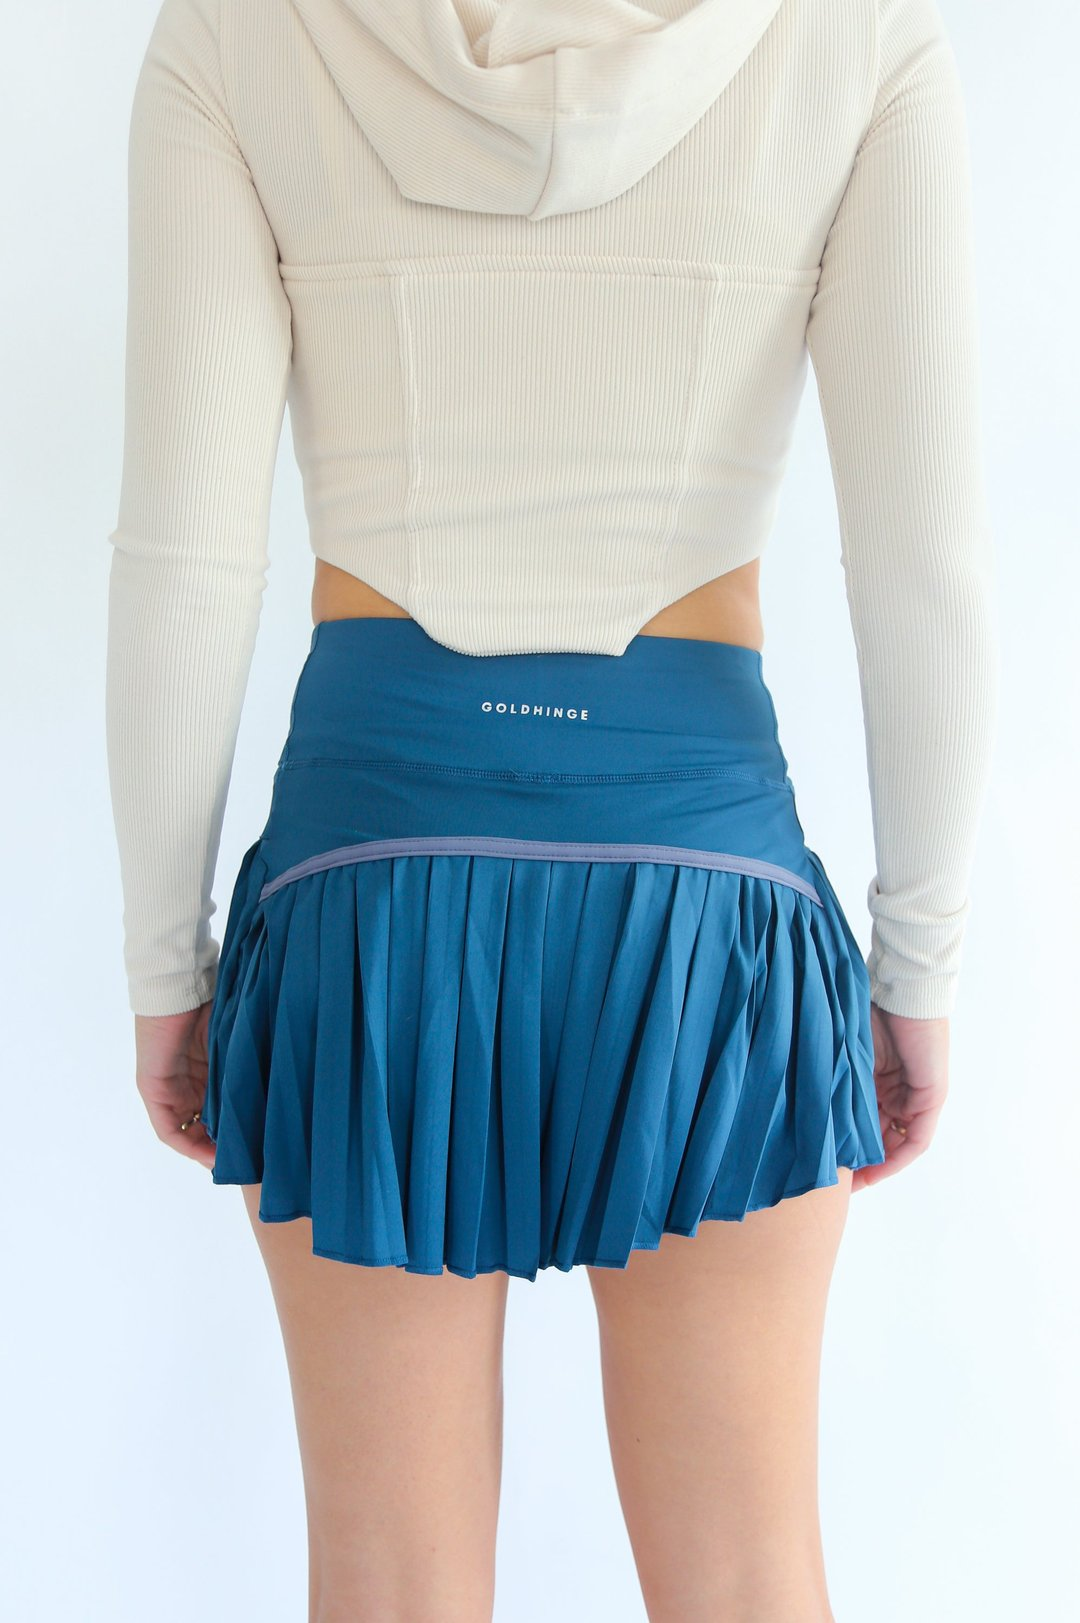 Teal Pleated Tennis Skirt